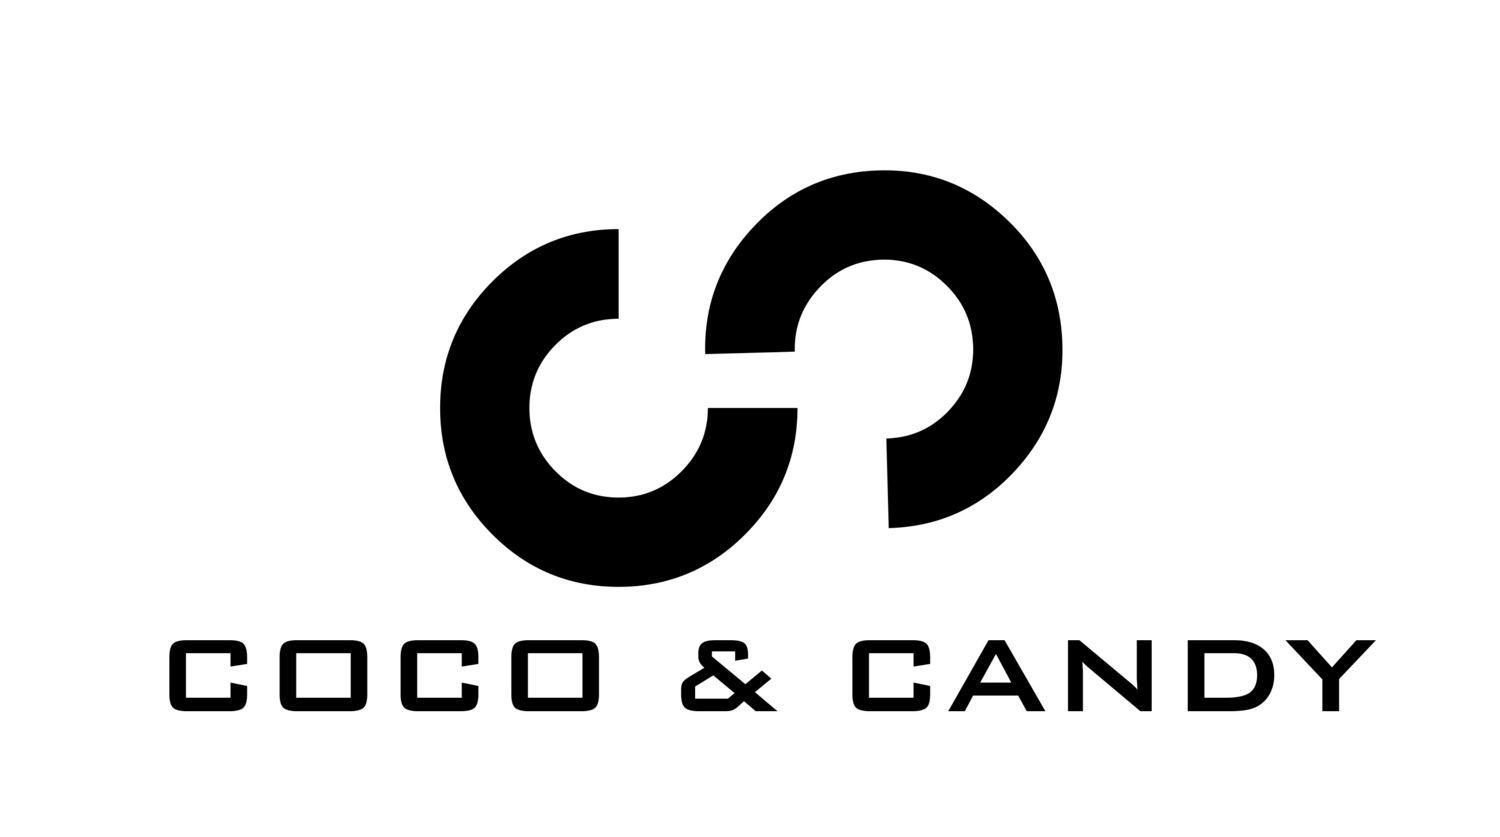 CC Logo - cc logo - Google Search | Bridal Store Creative Logo Ideas/Concepts ...